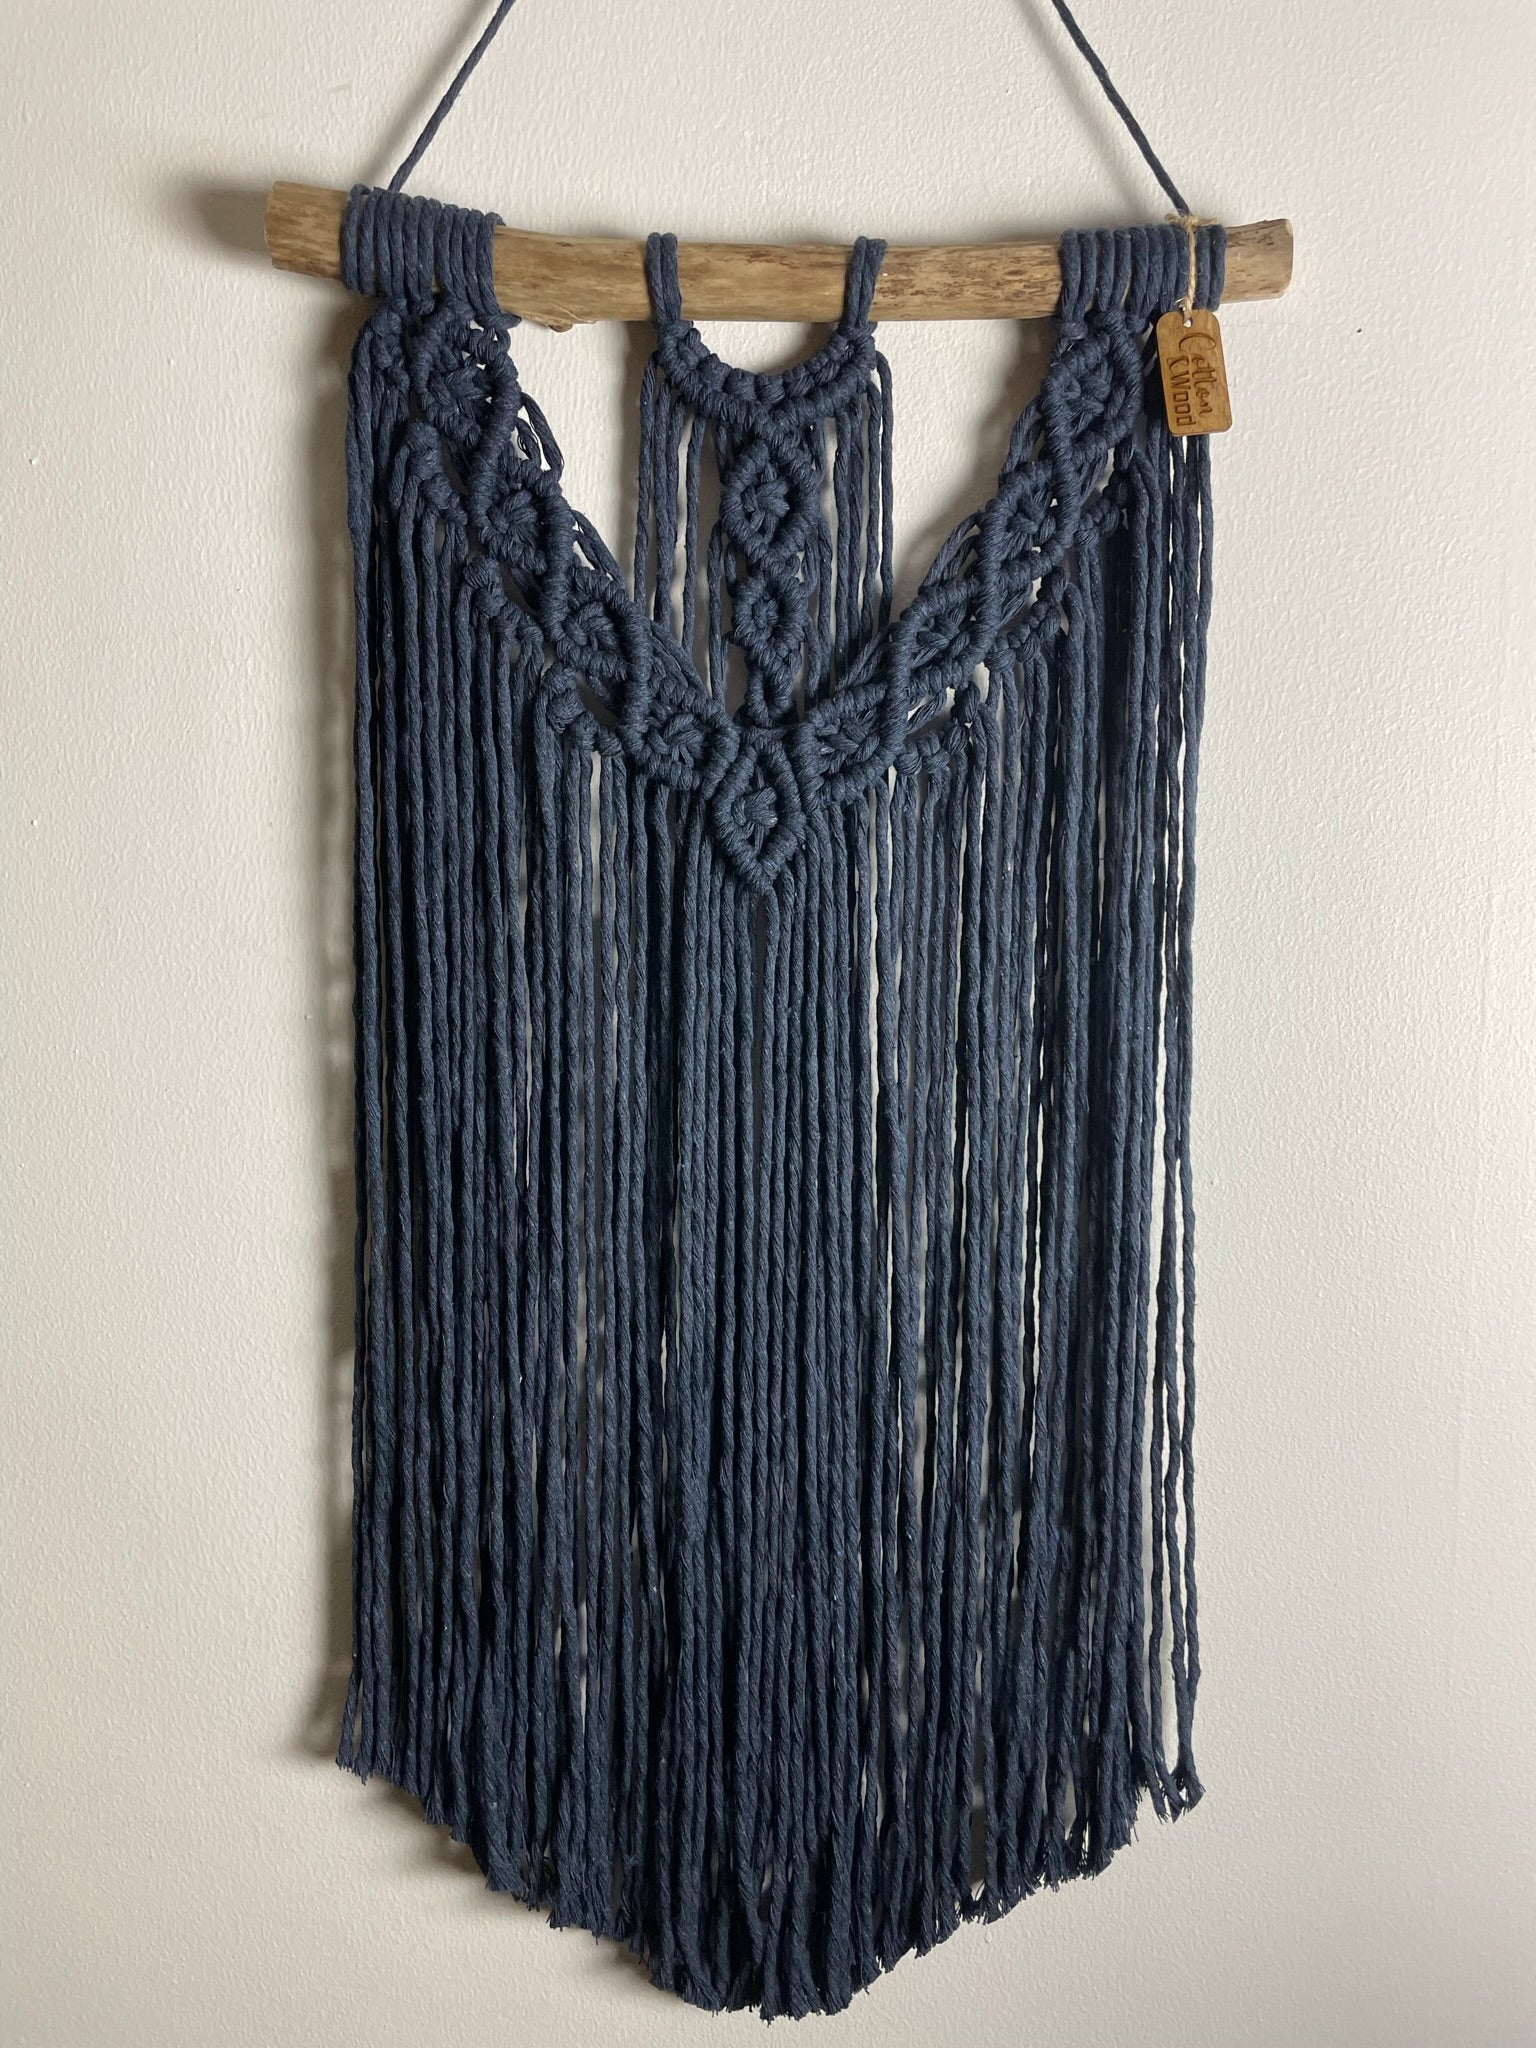 Väggbonad - handknuten makramé "Auctor" - Marinblå - cottonandwood.se